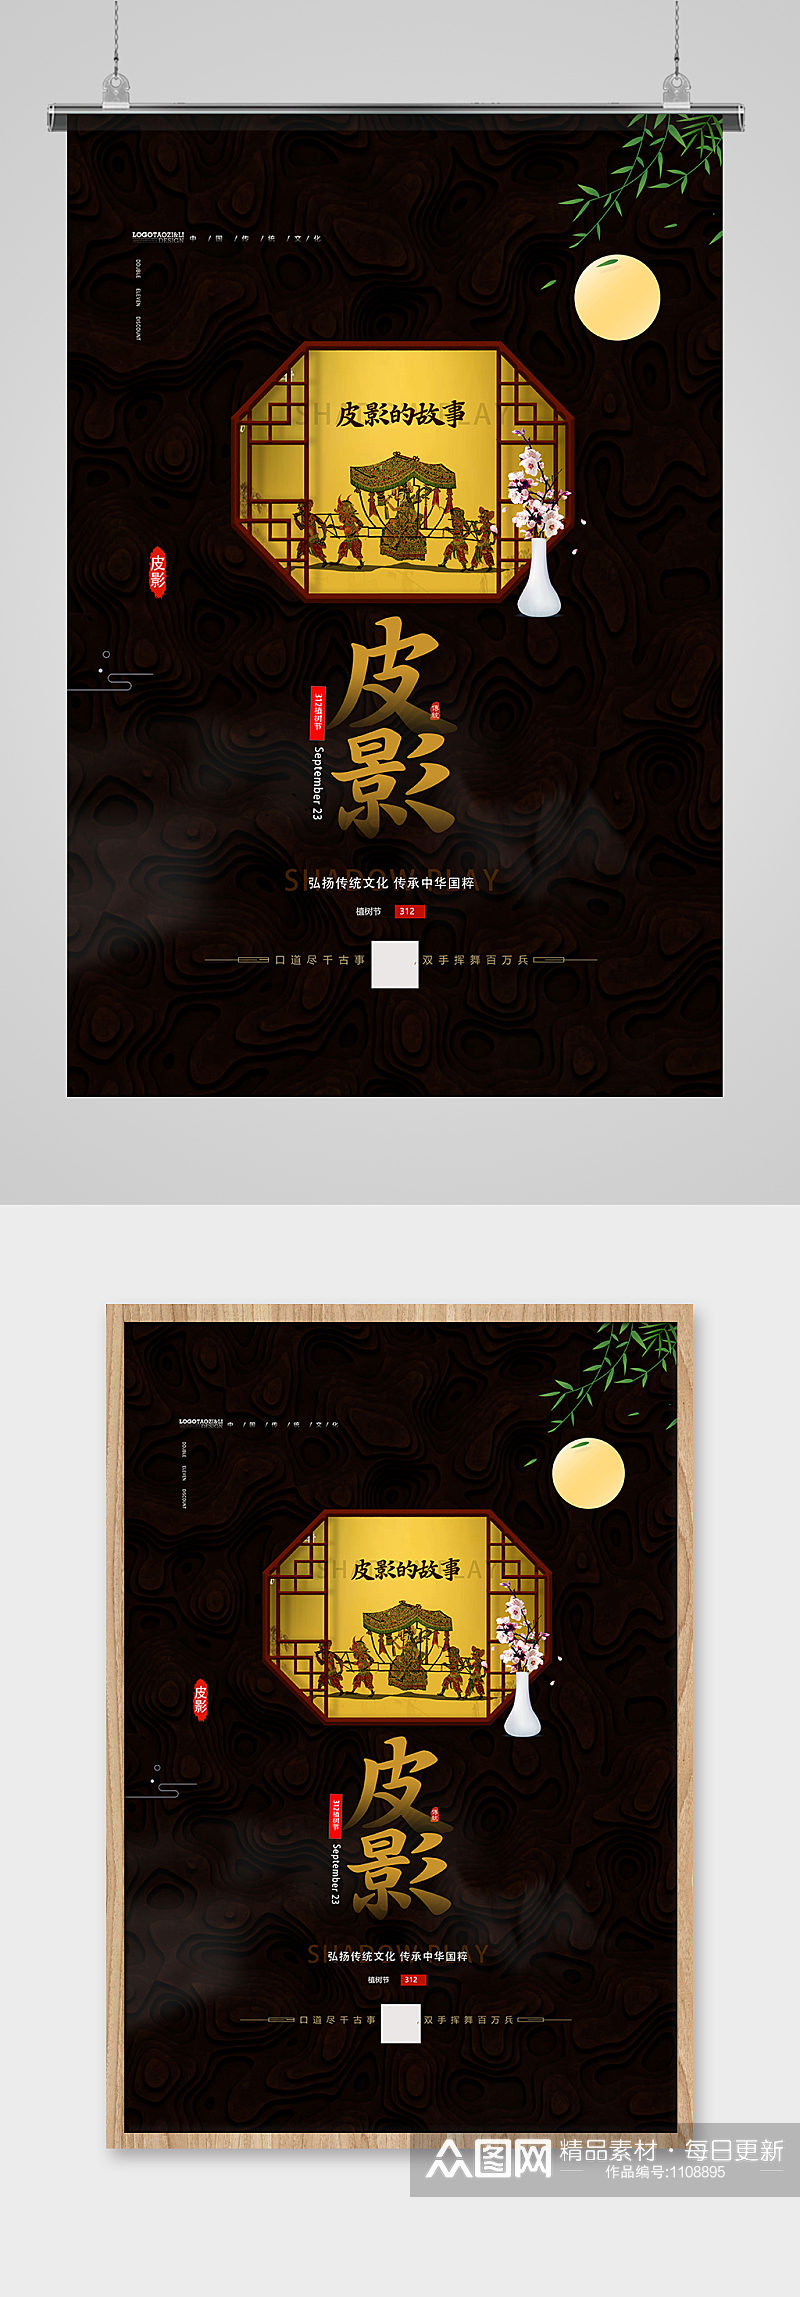 传统中国风皮影戏宣传海报设计素材